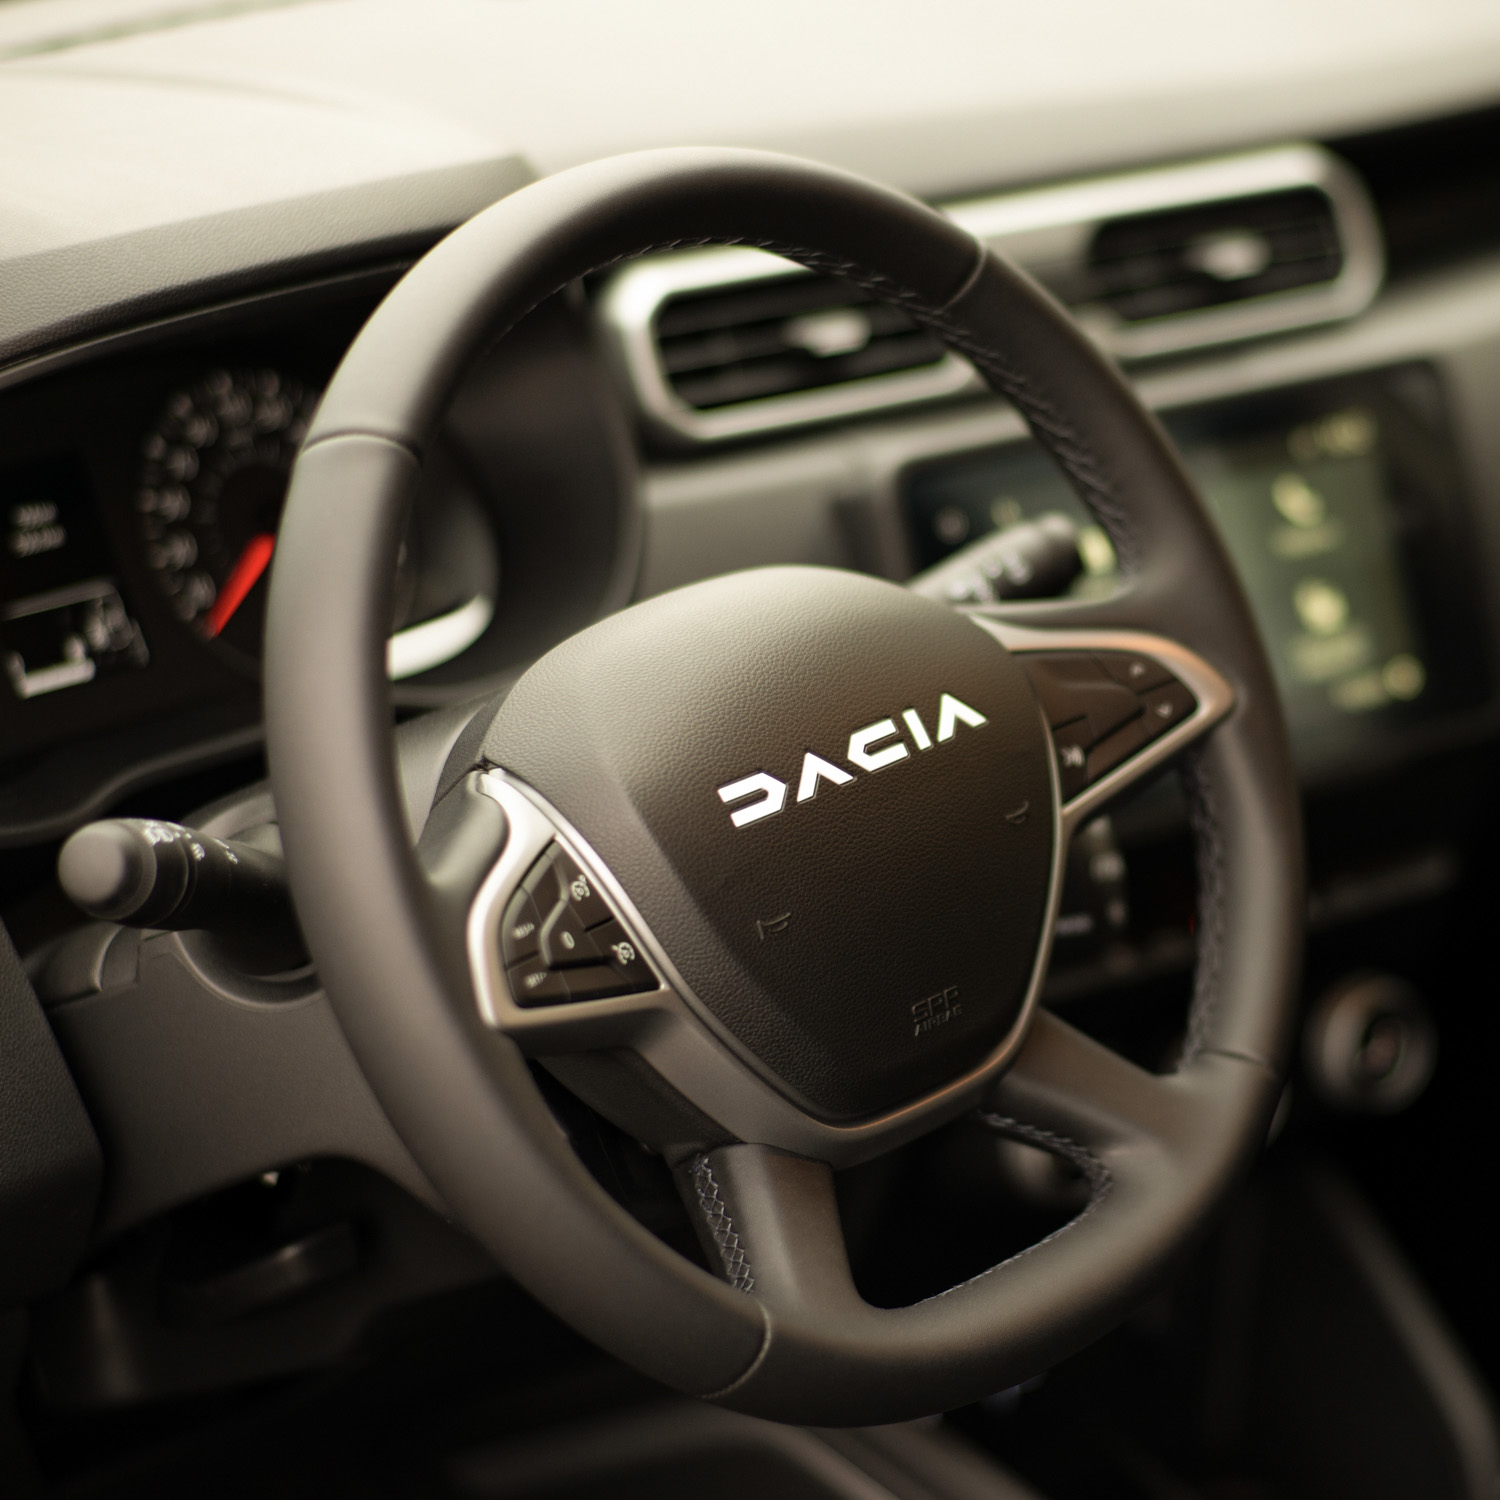 En neuf comme en occasion, à Sauve, en Piémont cévenol, dans le Gard, prenez le volant de votre nouvelle Dacia !